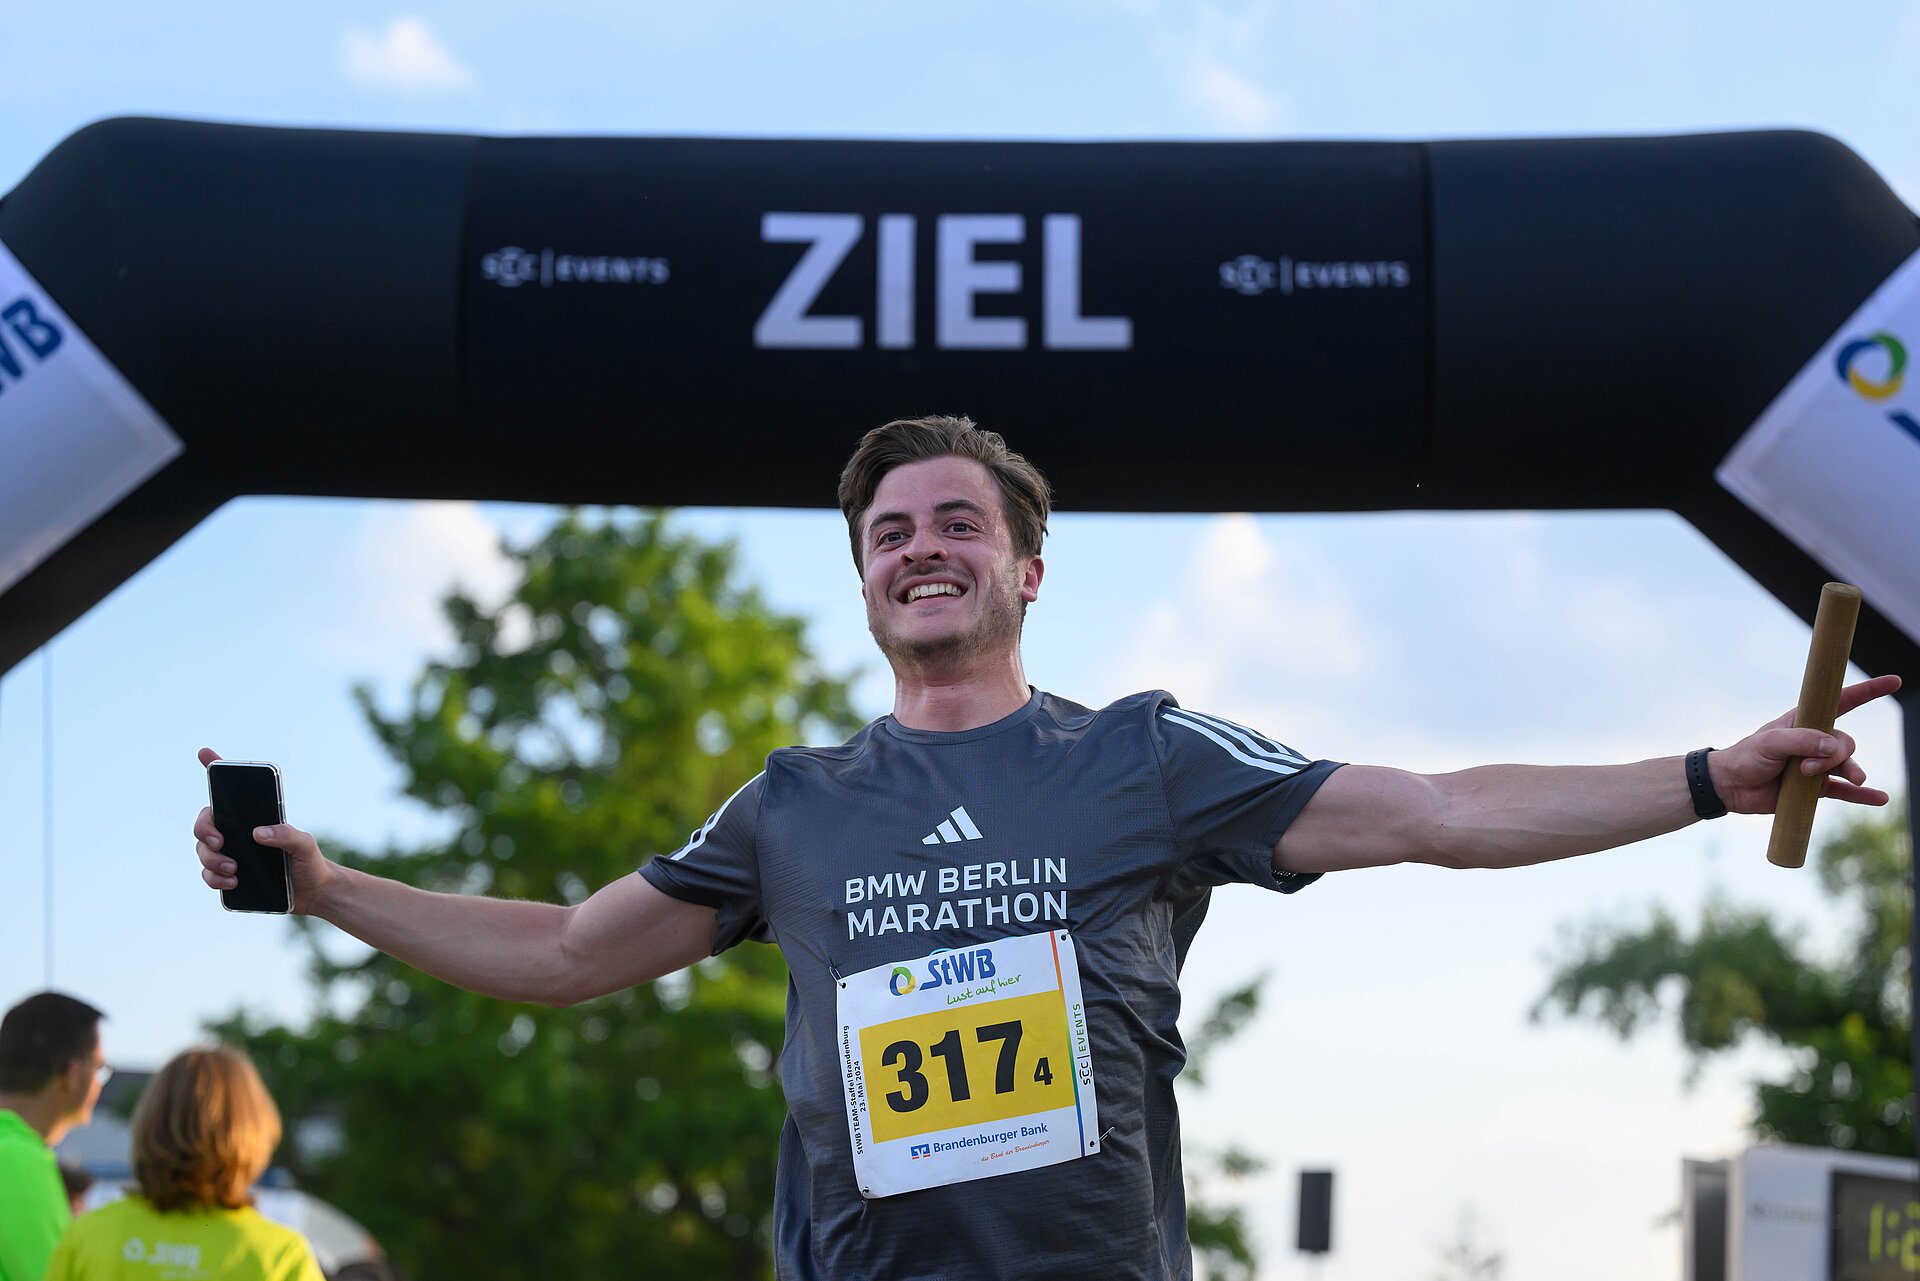 Teamstaffel Brandenburg: Läufer freut sich nach Zieleinlauf © SCC EVENTS